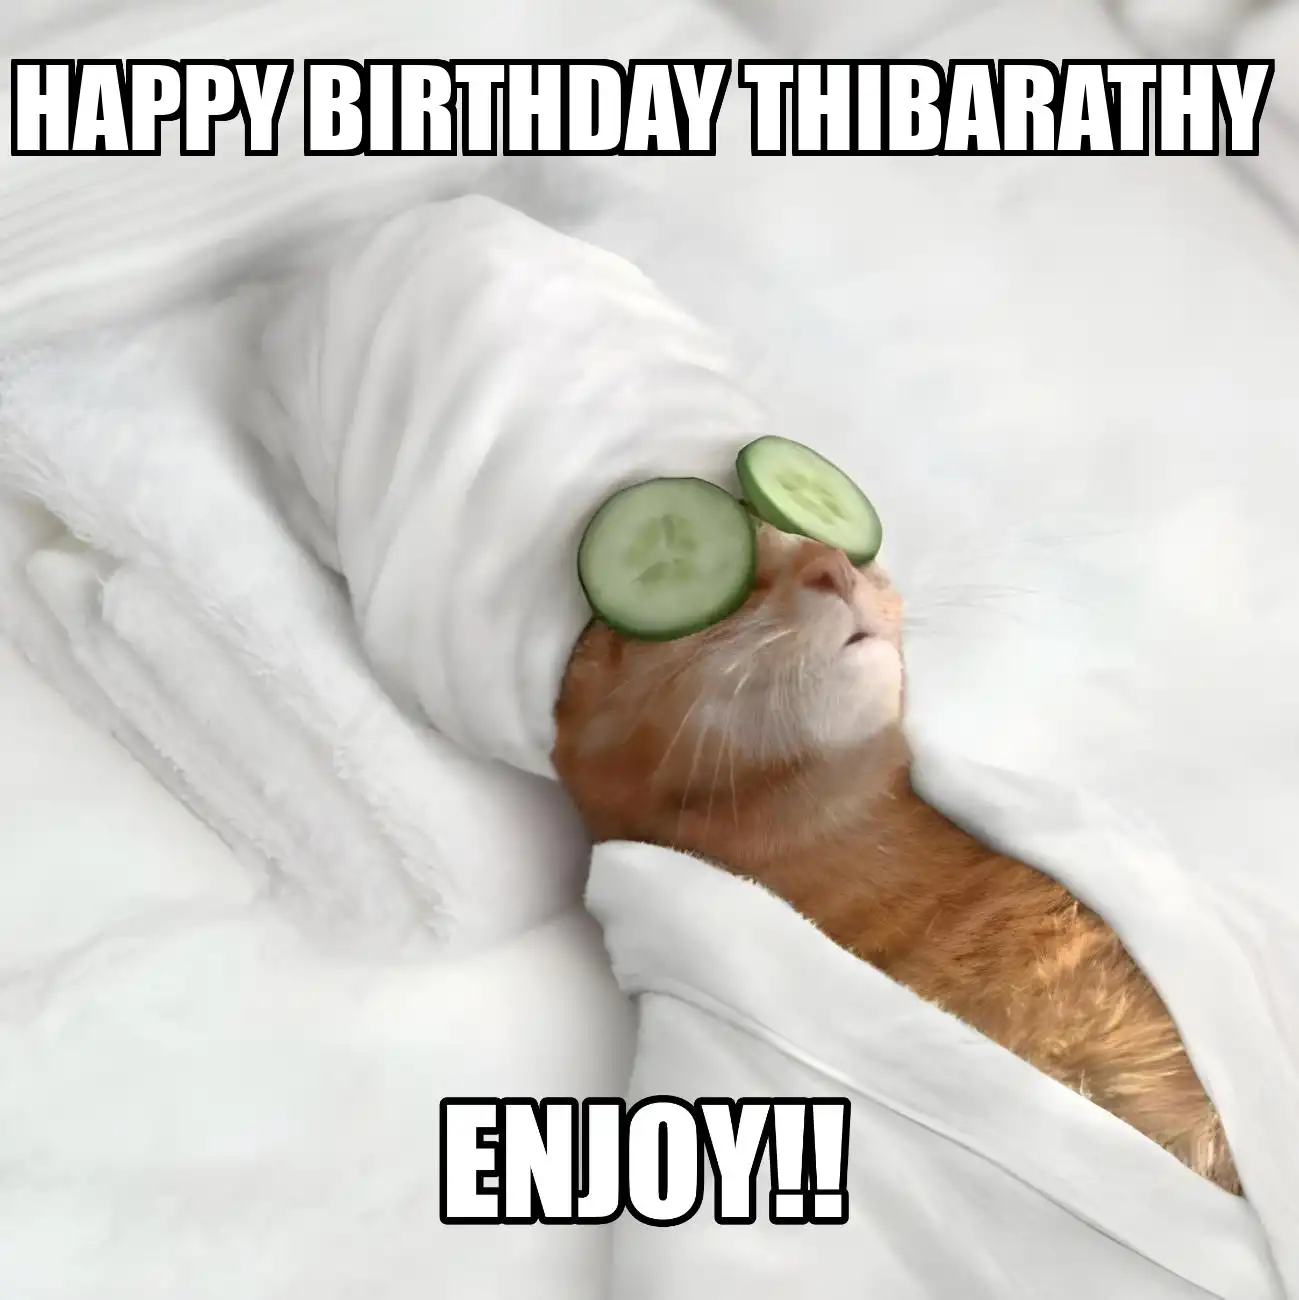 Happy Birthday Thibarathy Enjoy Cat Meme